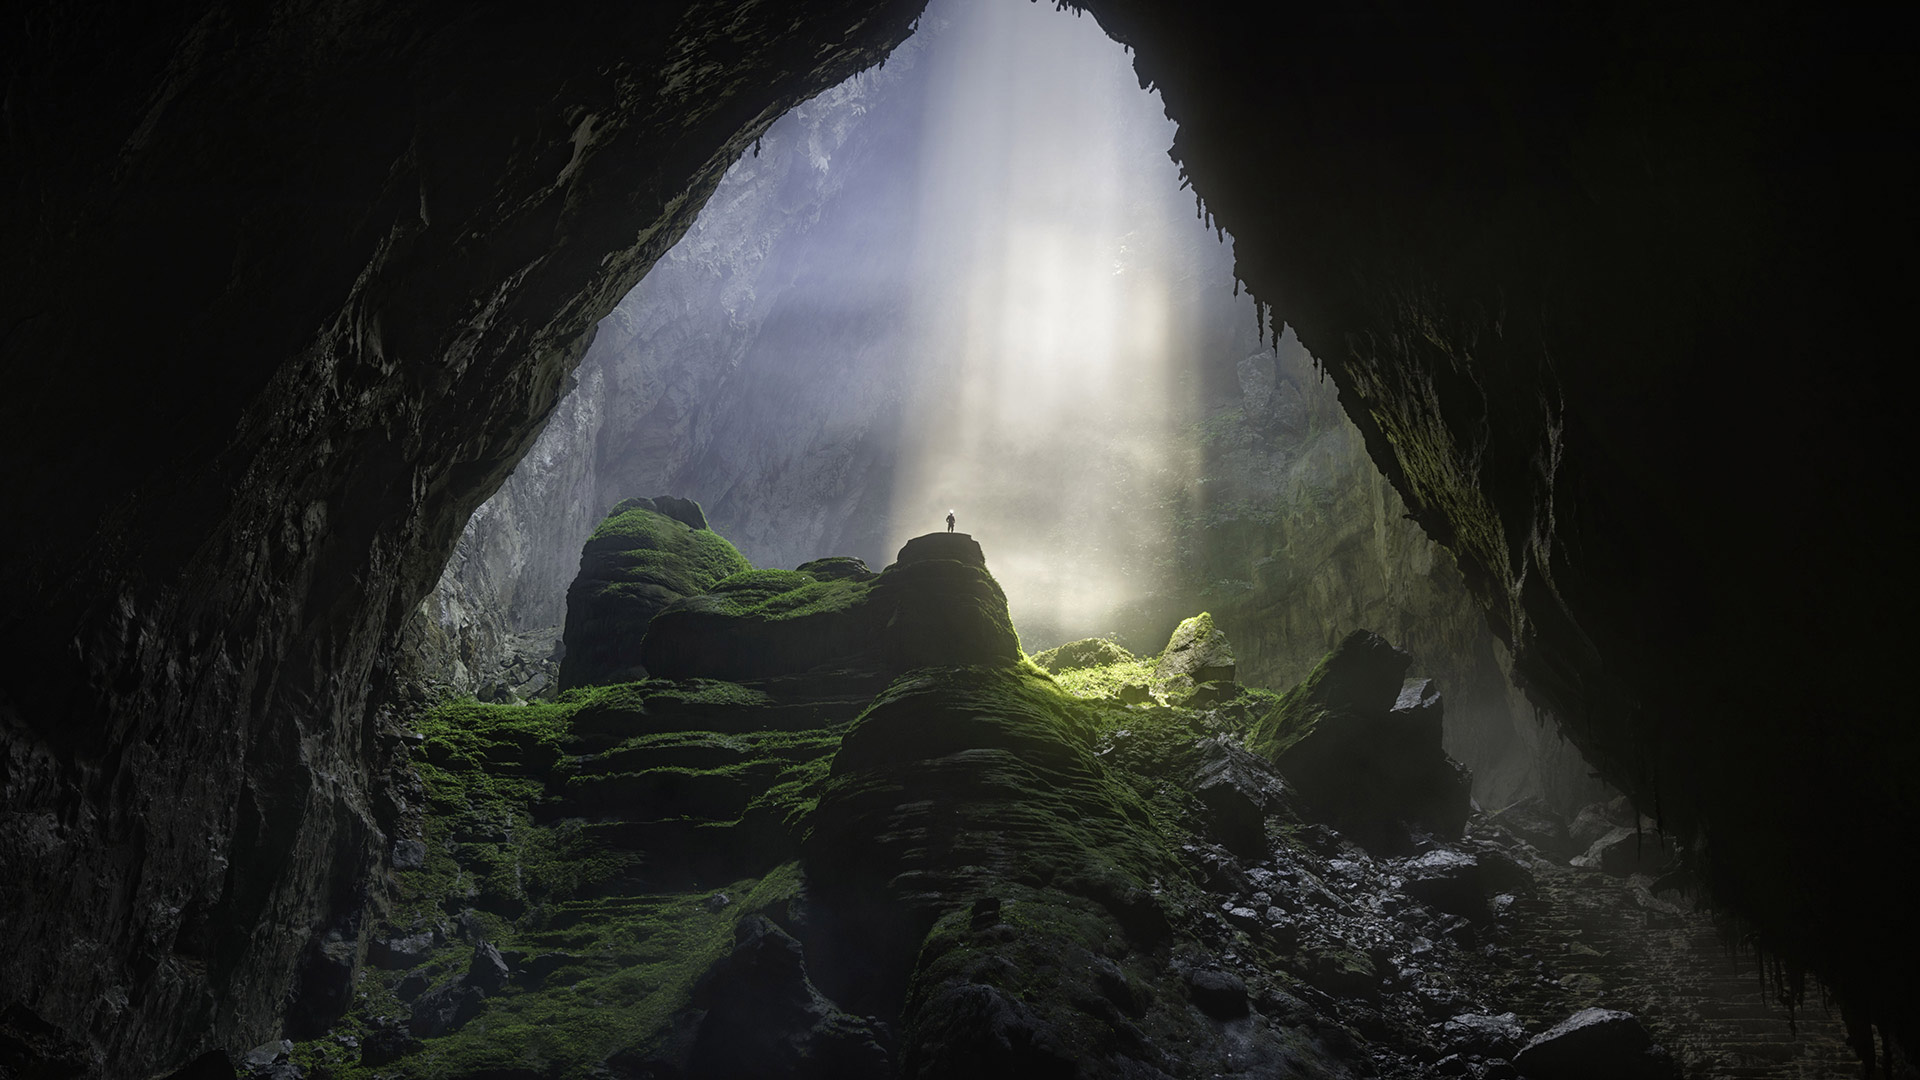 Sơn Đoòng cave in Phong Nha-Kẻ Bàng National Park, Vietnam - David A Knight/Shutterstock)